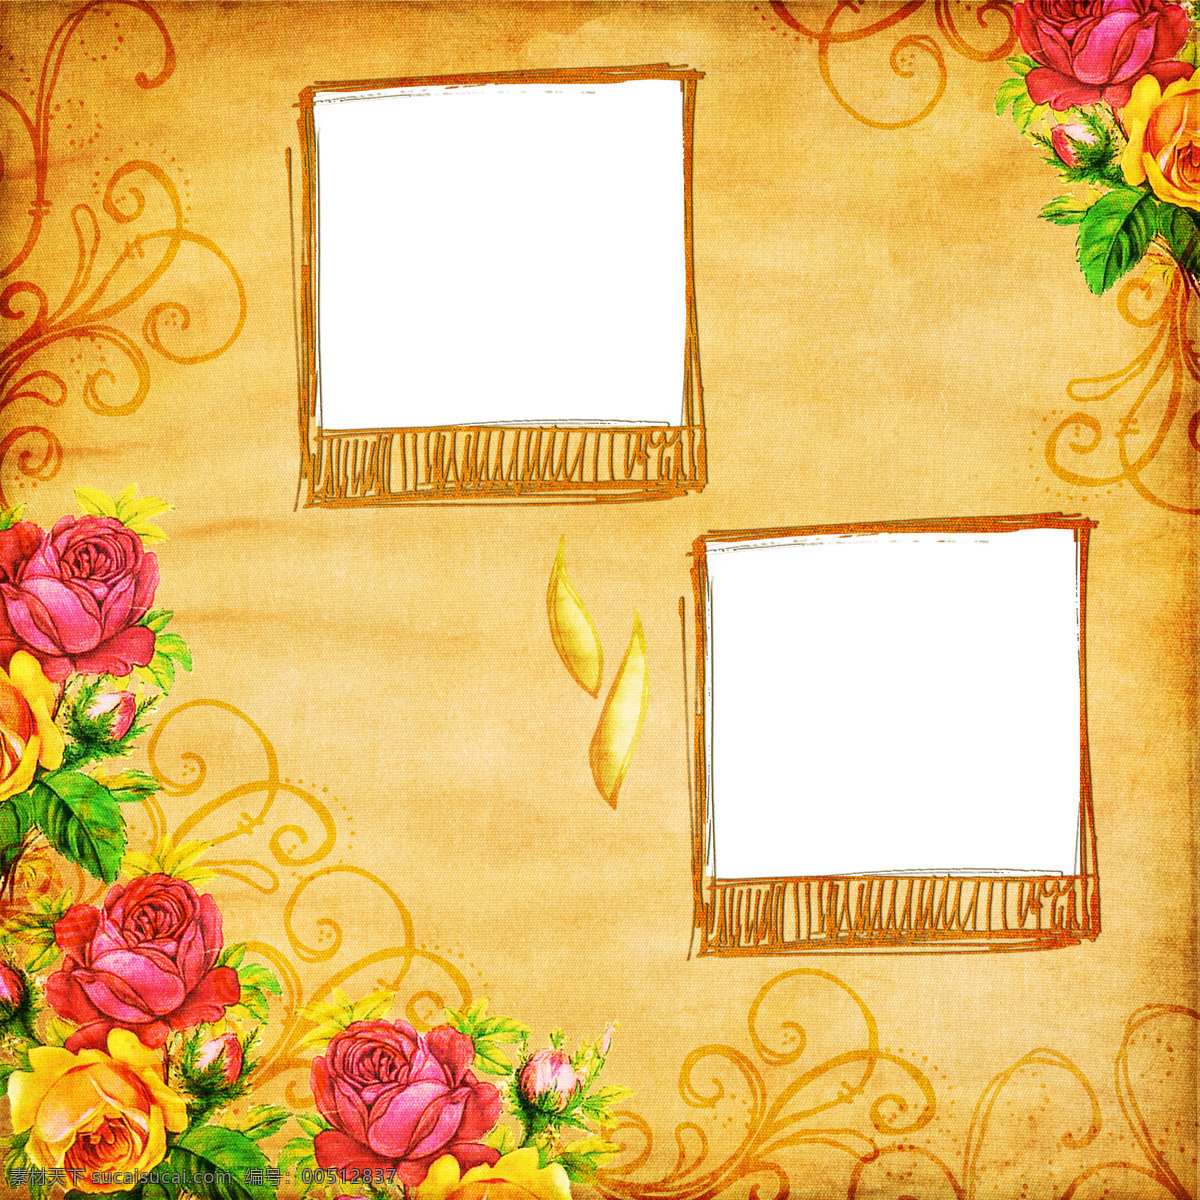 边框相框 底纹边框 红花 花边 花朵 金色 绿叶 相框 设计素材 模板下载 富丽 照片 异域